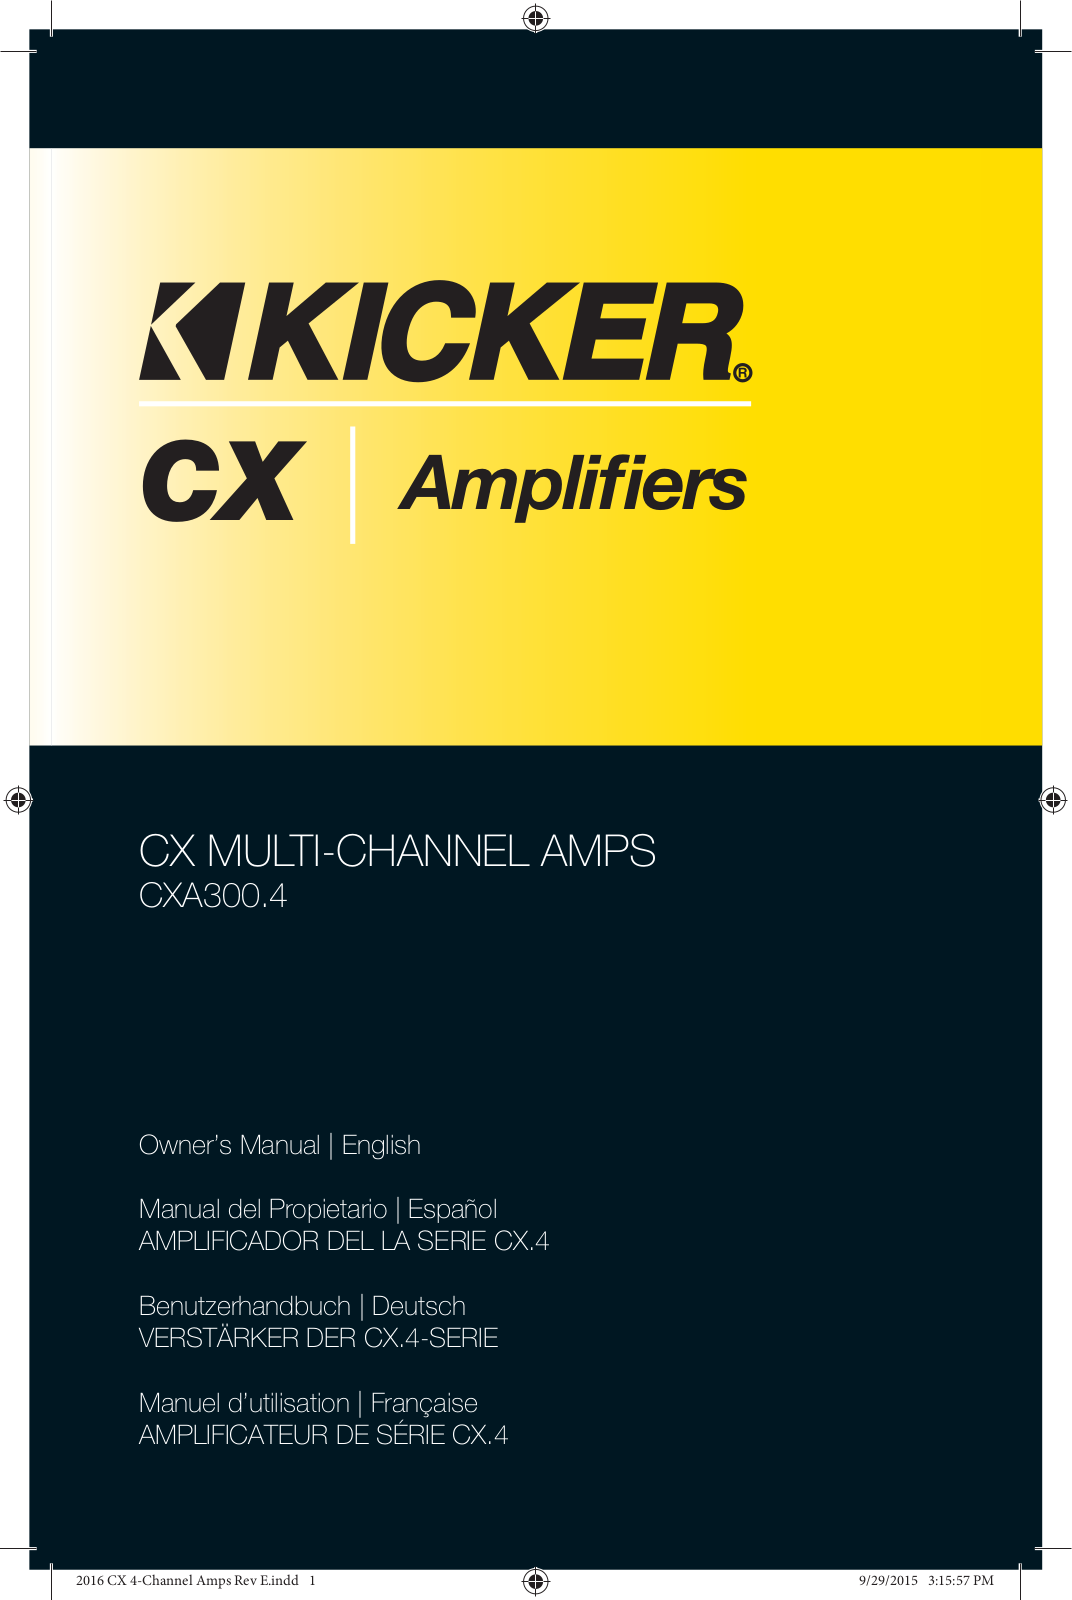 Kicker CXA300.4 operation manual